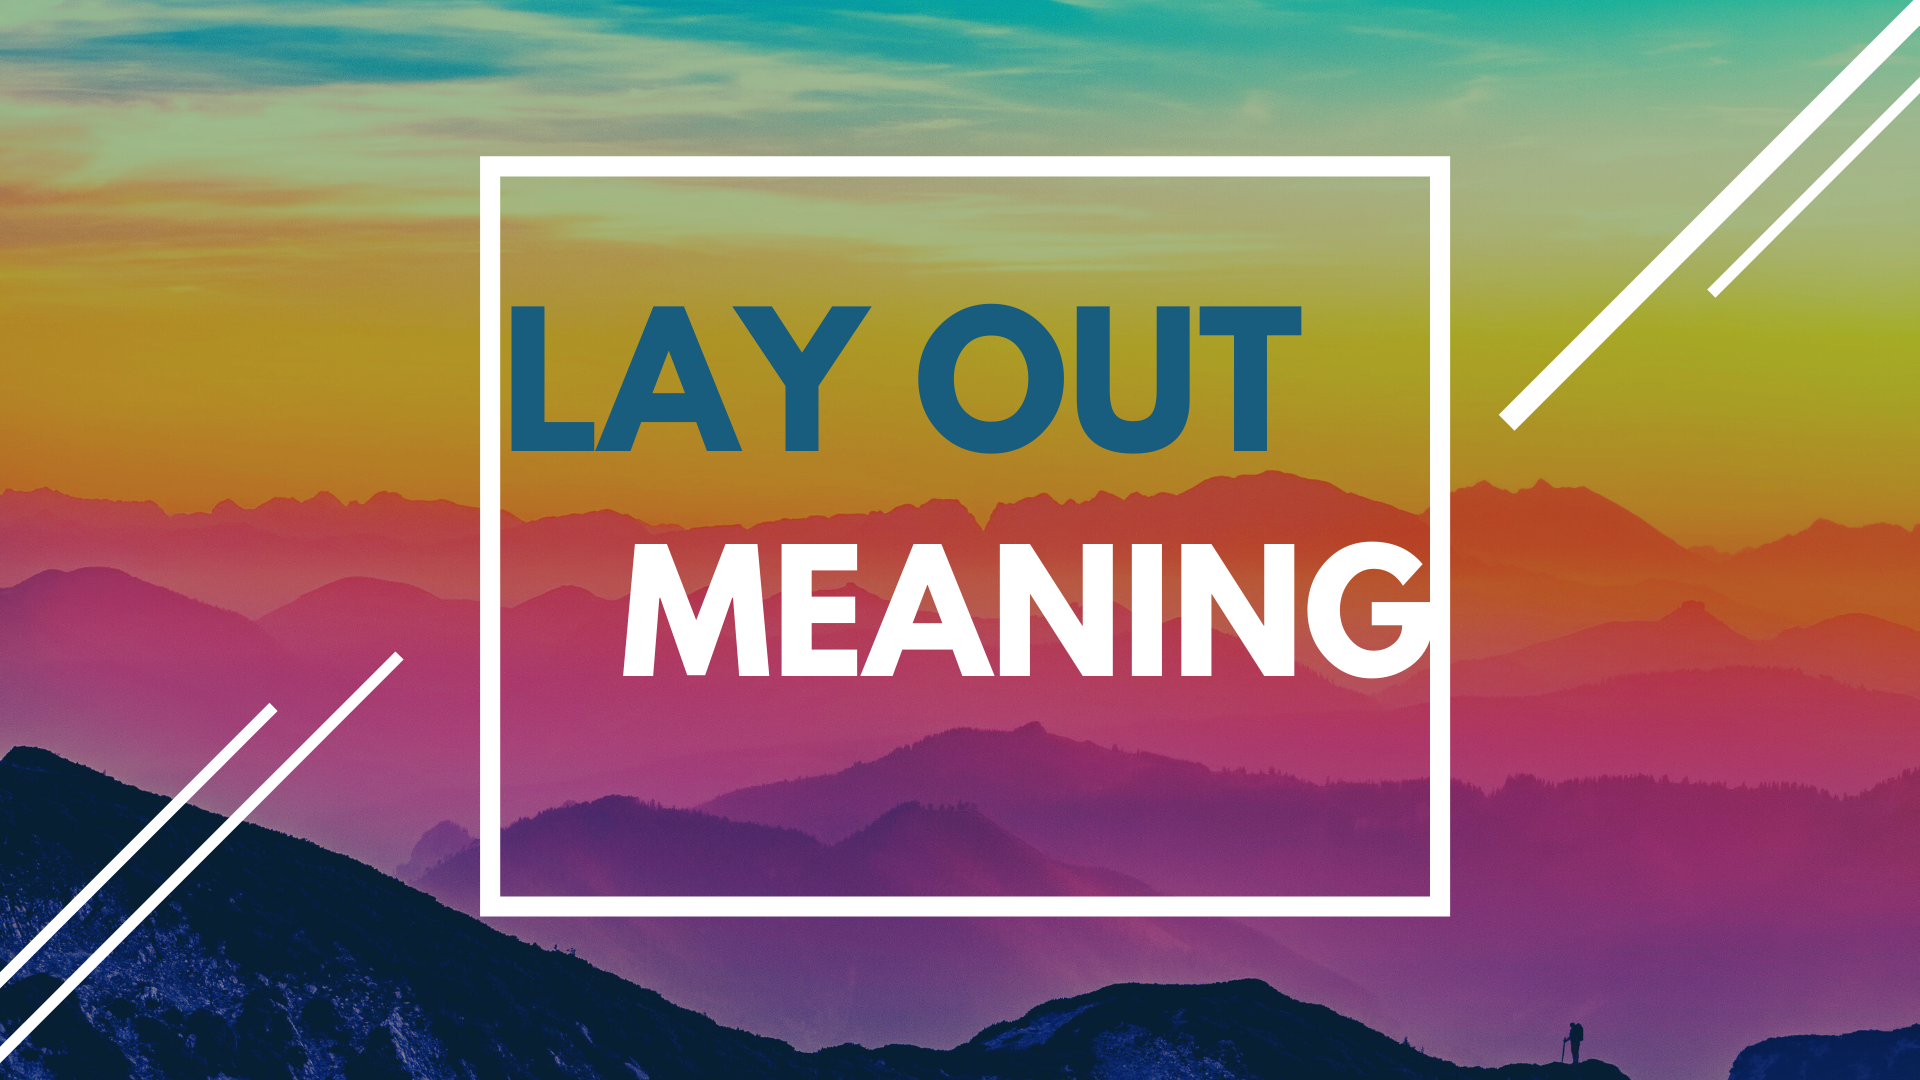 Lay Out là gì và cấu trúc cụm từ Lay Out trong câu Tiếng Anh